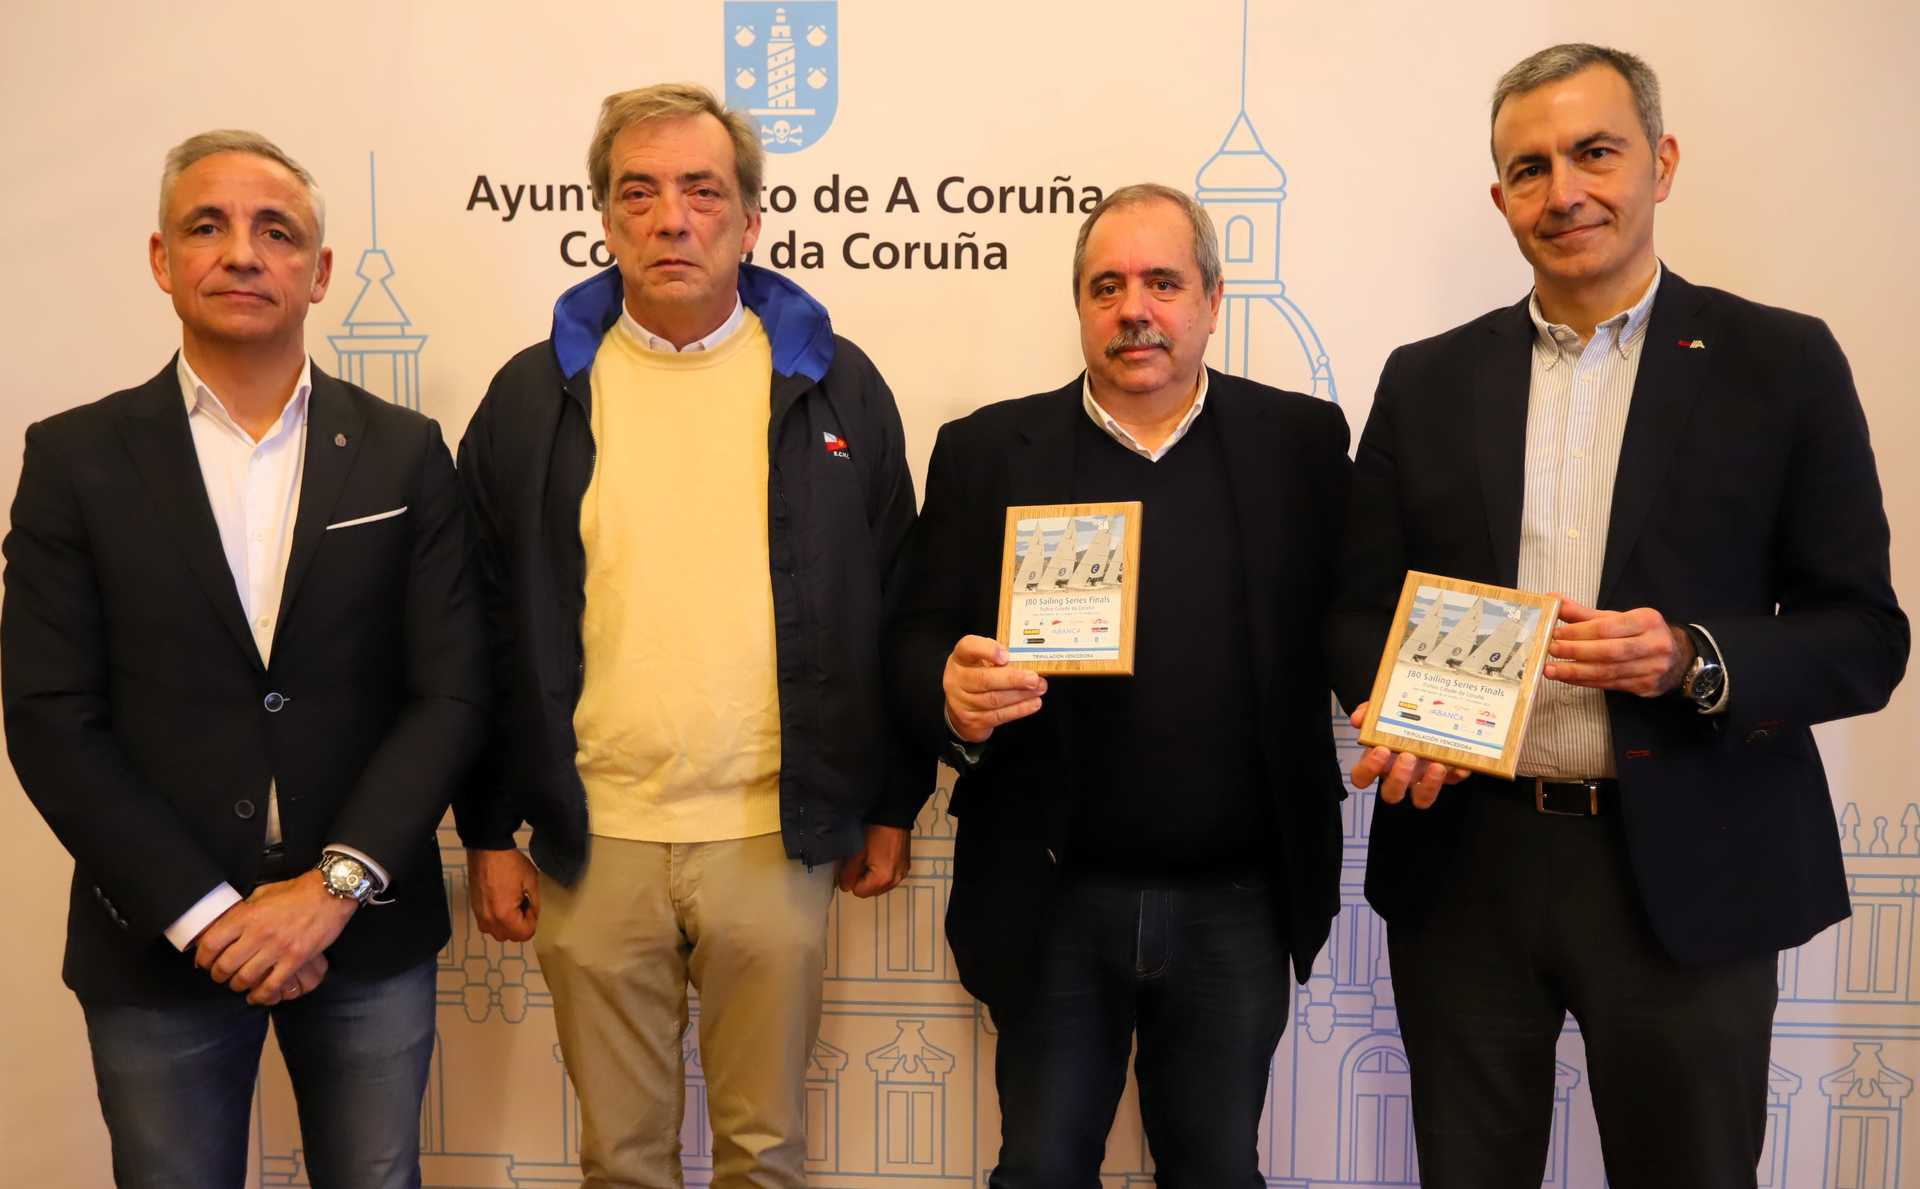  Semana Abanca: los mejores equipos de J80 españoles se citan en A Coruña 